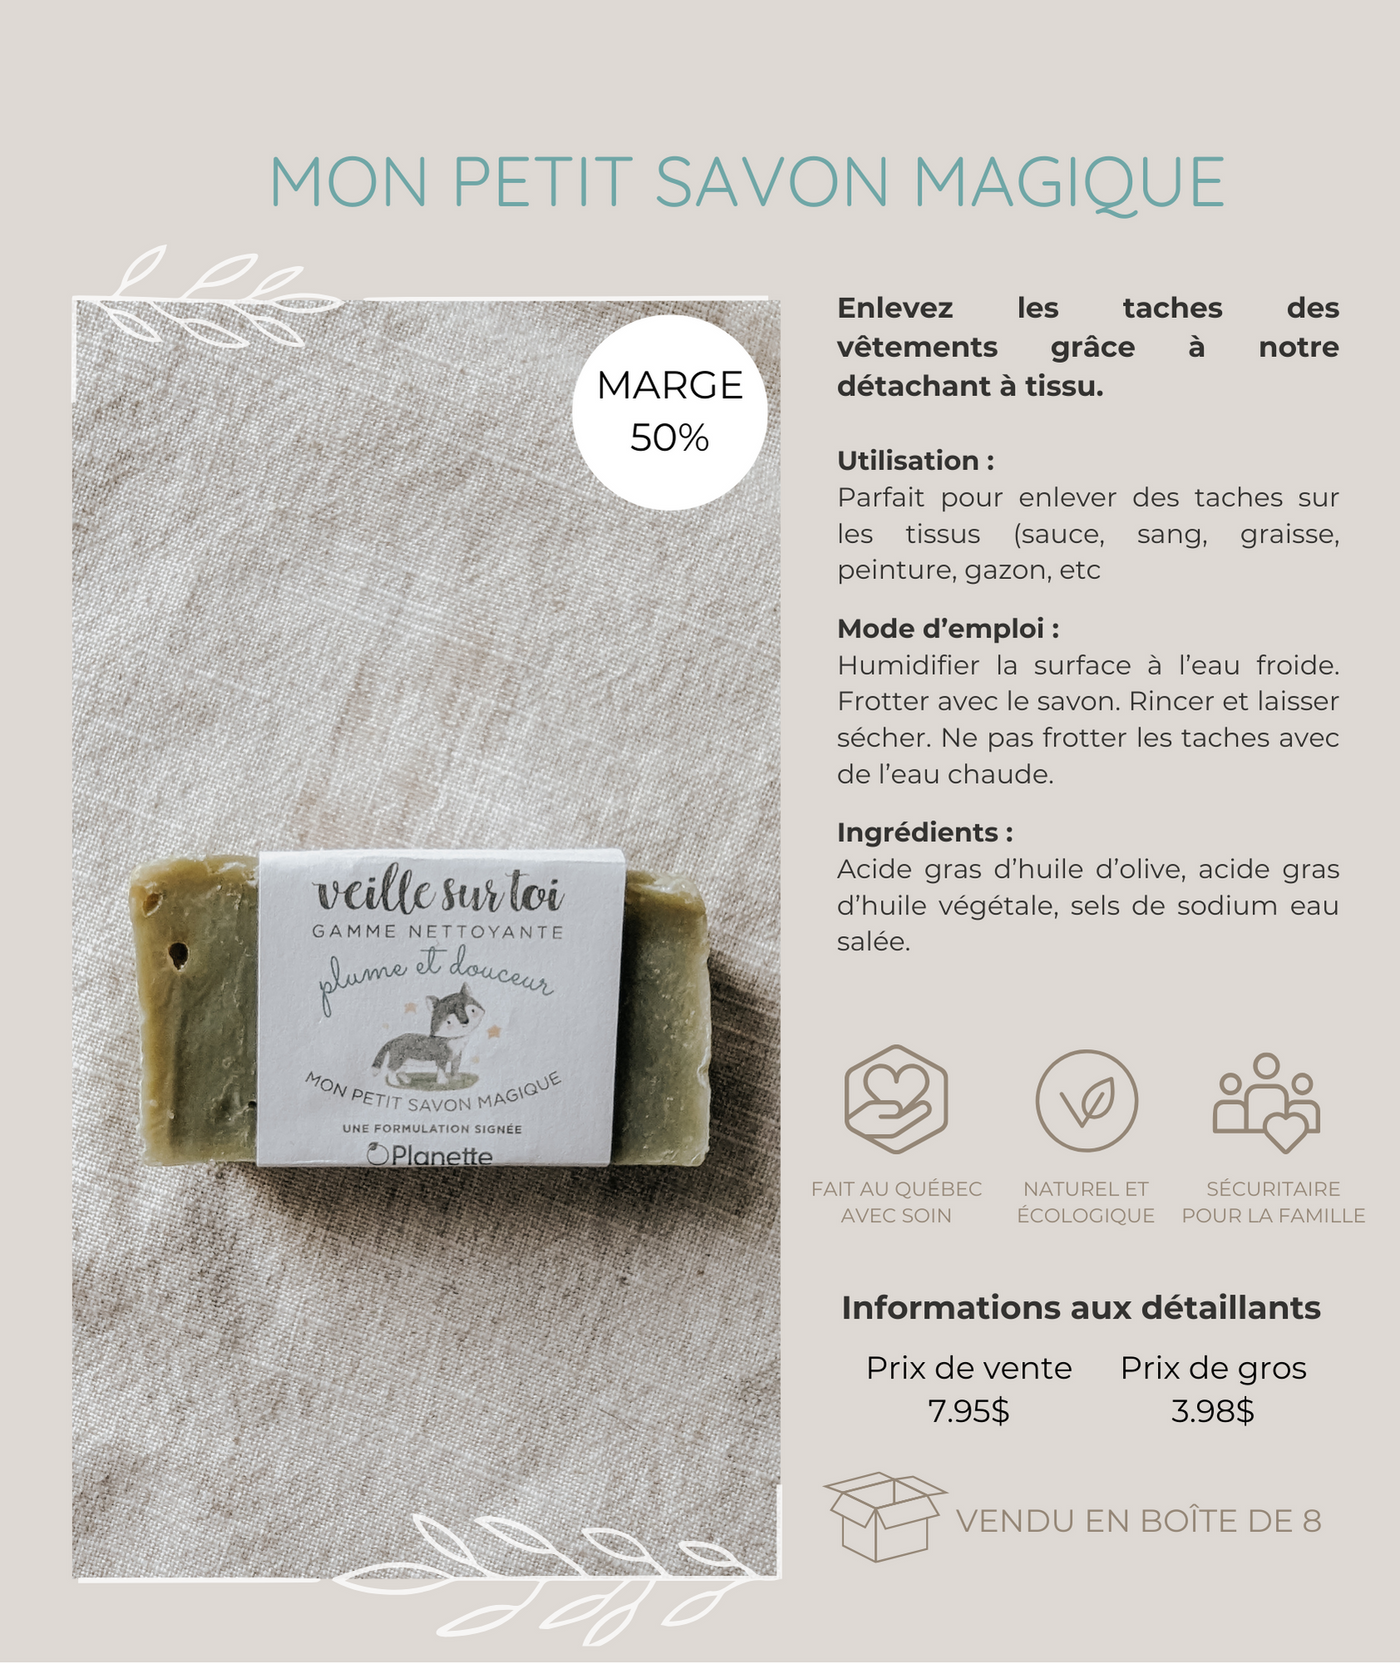 Gamme nettoyante - Mon petit savon magique - Boite de 8 - Veille sur toi & Planette